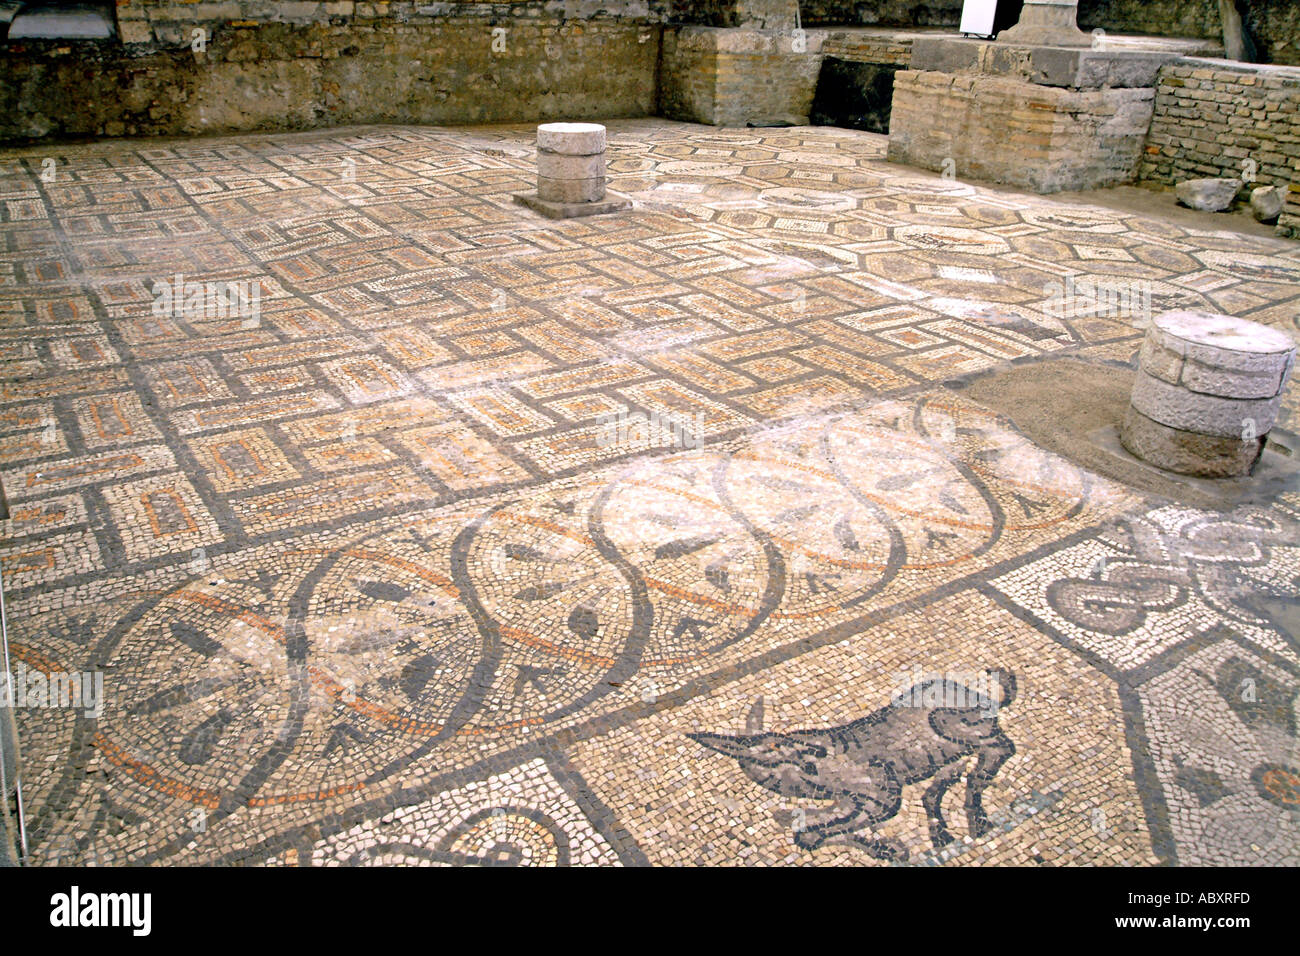 Il pavimento in mosaico della Basilica di Aquileia vicino a Grado nella regione Friuli Venezia Giulia del nord est dell'Italia. Foto Stock